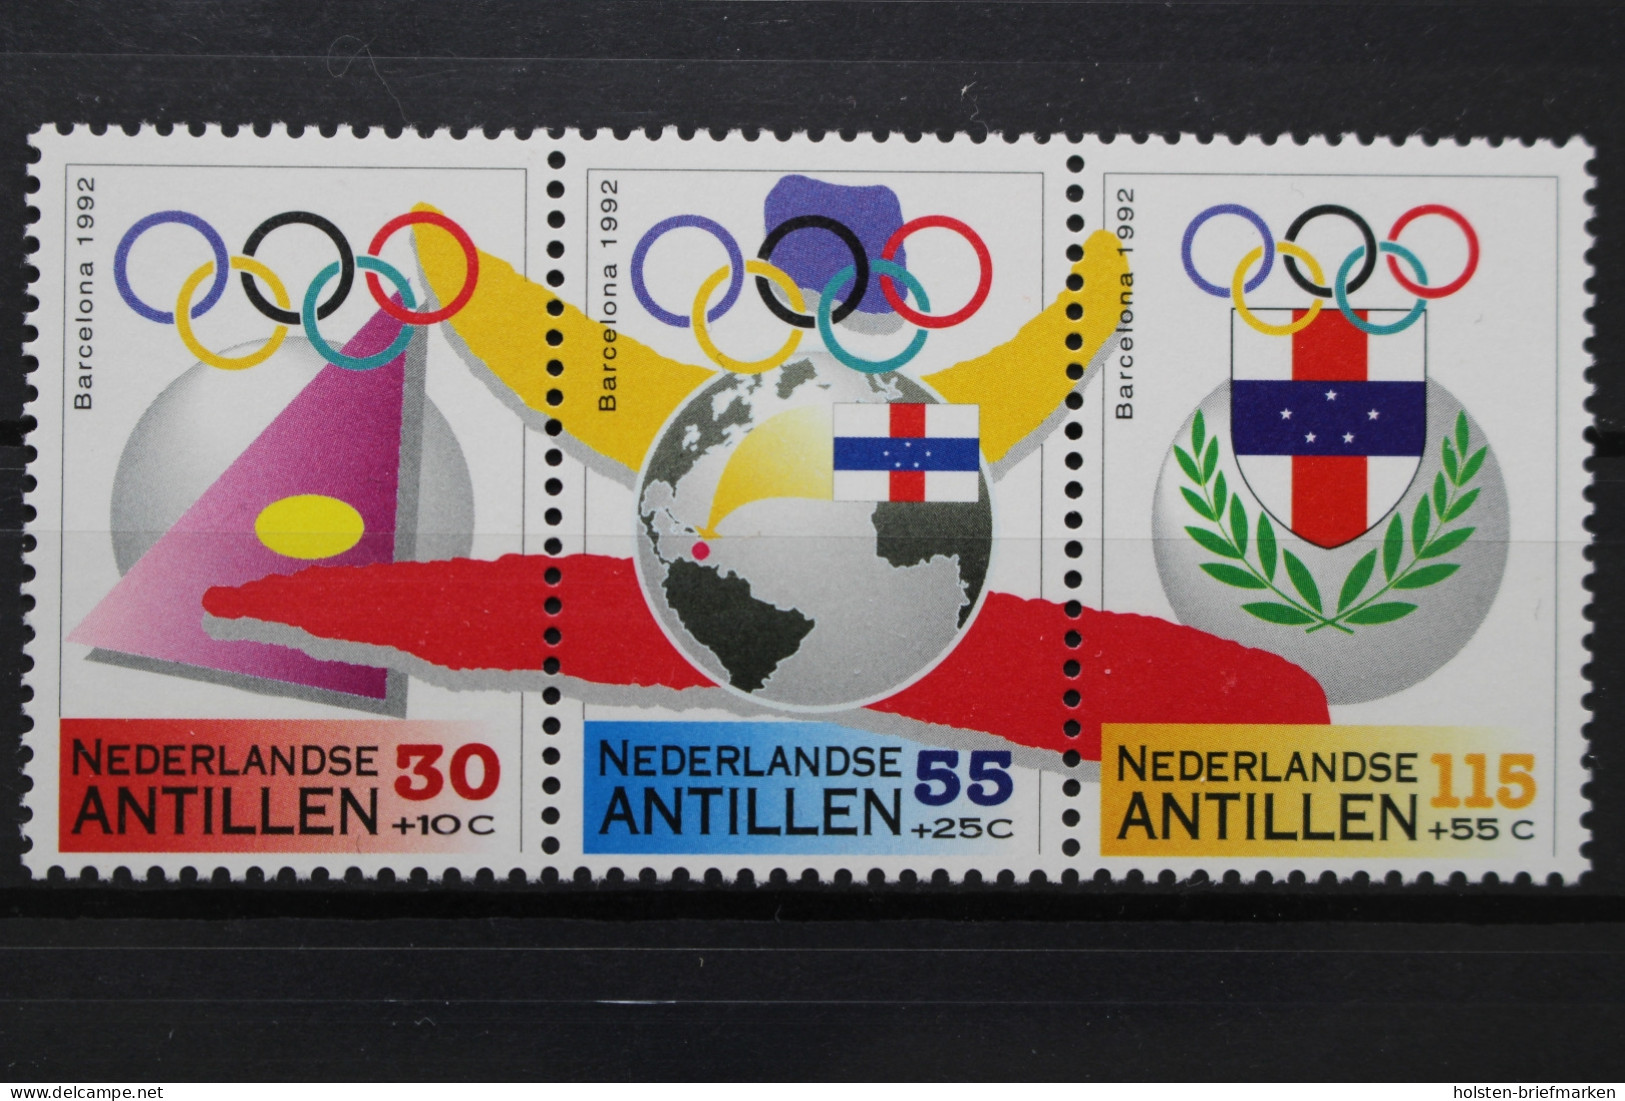 Niederländische Antillen, MiNr. 745-747, Postfrisch - Sonstige - Amerika